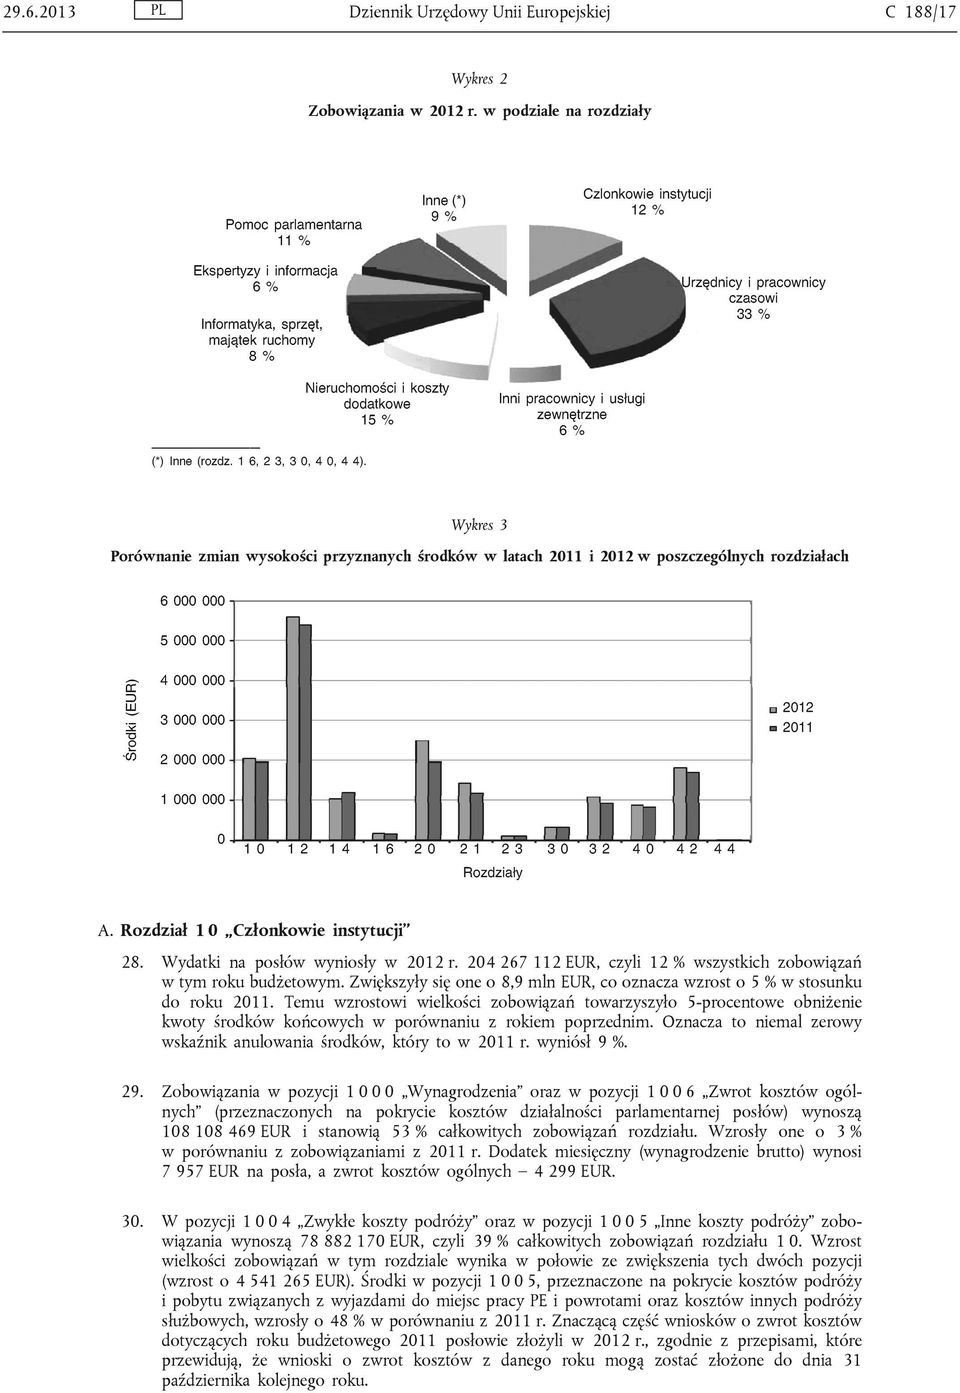 Wydatki na posłów wyniosły w 2012 r. 204 267 112 EUR, czyli 12 % wszystkich zobowiązań w tym roku budżetowym. Zwiększyły się one o 8,9 mln EUR, co oznacza wzrost o 5 % w stosunku do roku 2011.